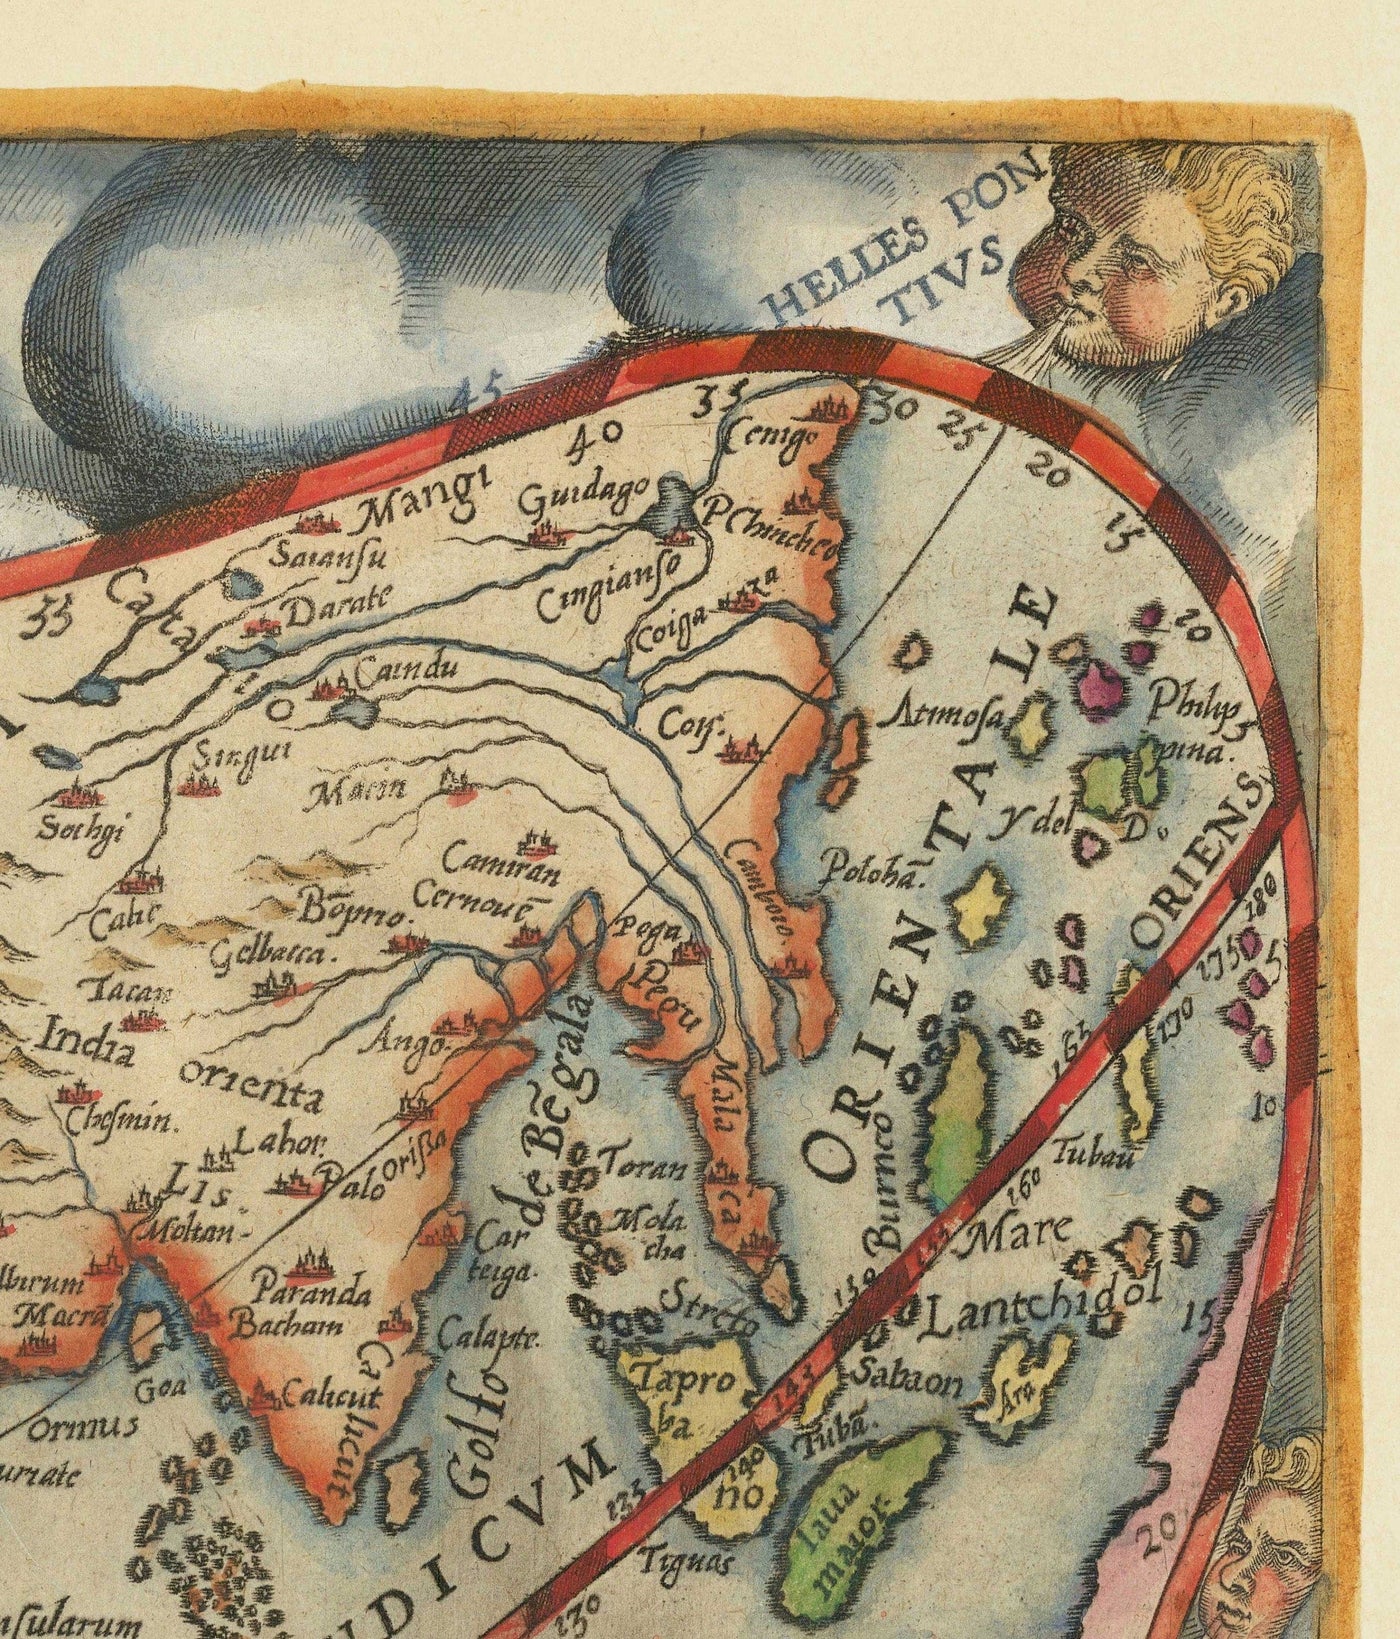 Sehr alte Weltkarte, 1571 von Gerard de Jode - Cordiforme Projektion, Cherubs, Antarktis, Atlas, Frühkolonialismus